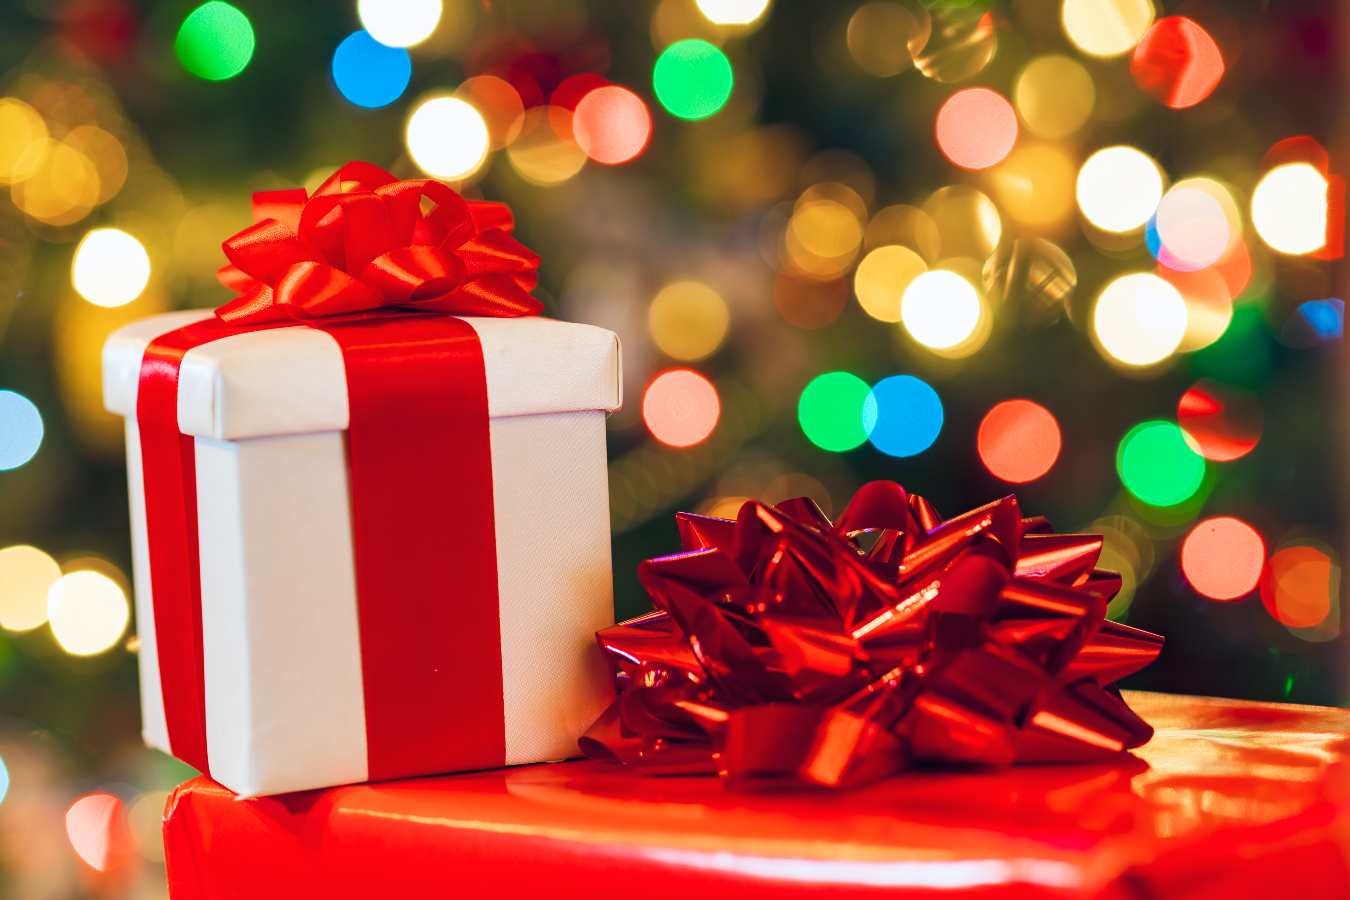 Oto najlepsze pomysły na prezenty świąteczne dla rodziny! Spraw bliskim niezwykłą niespodziankę